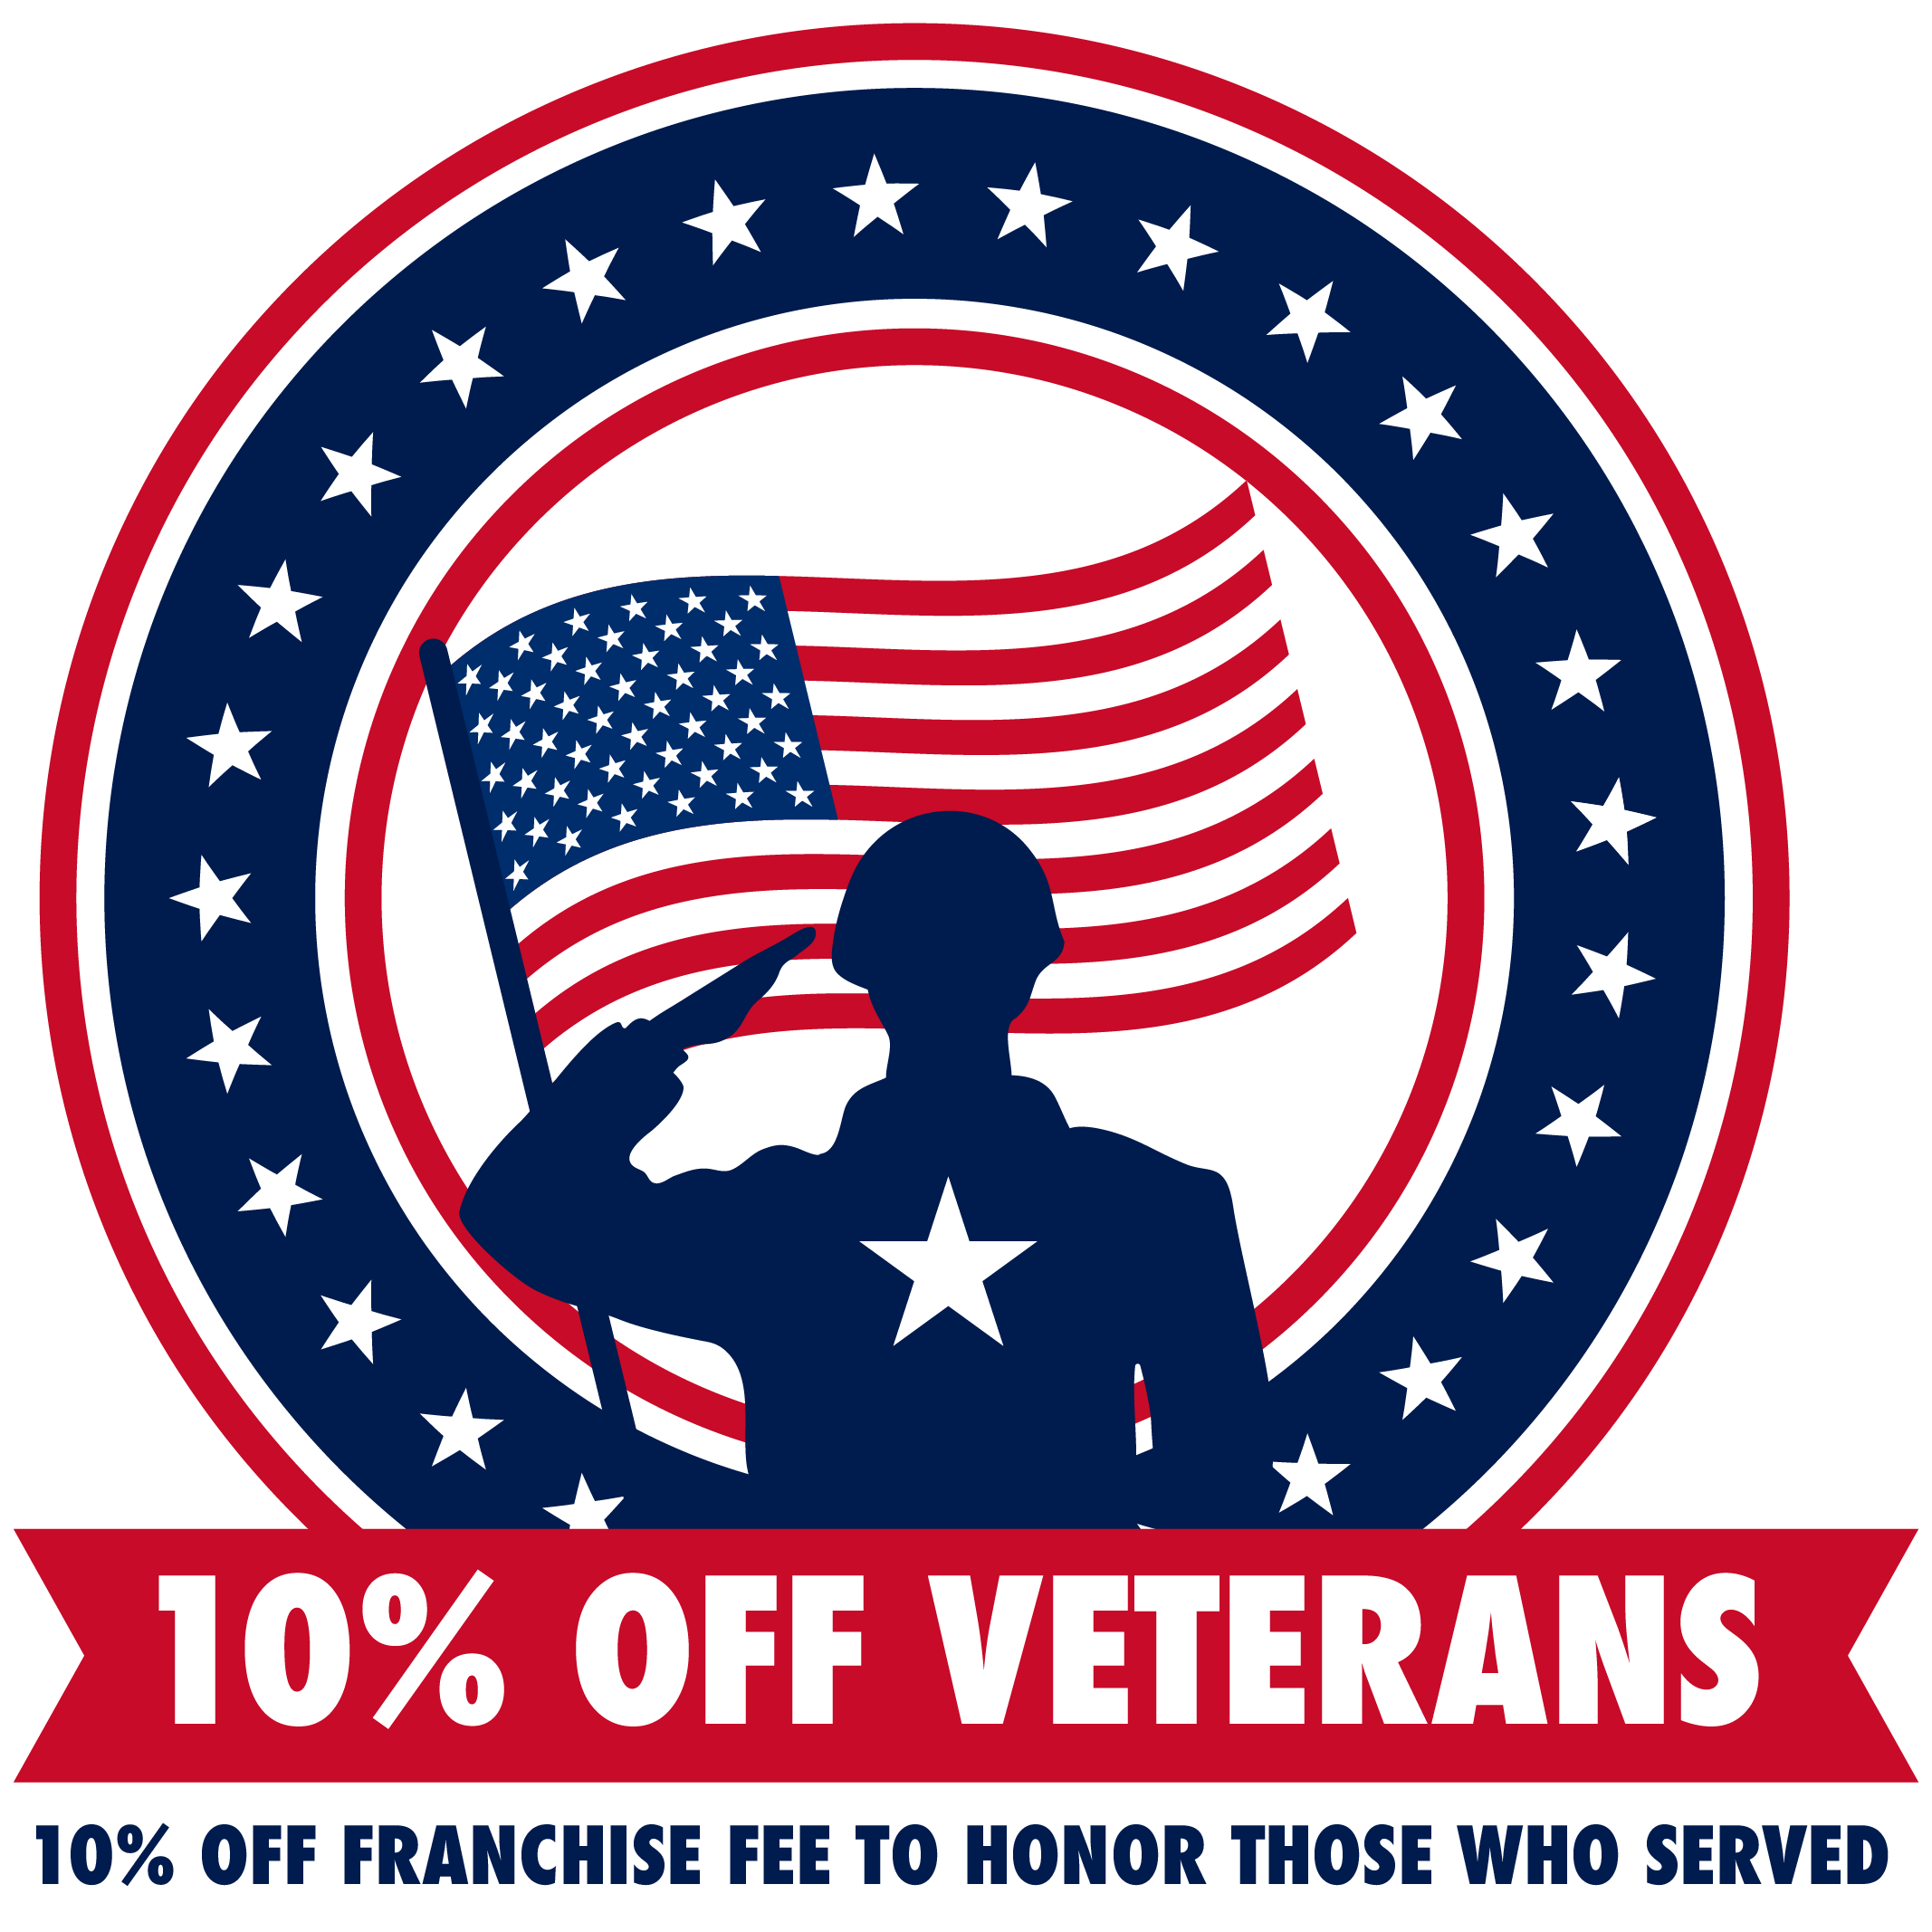 10 percent off for veterans for franchise opportunities